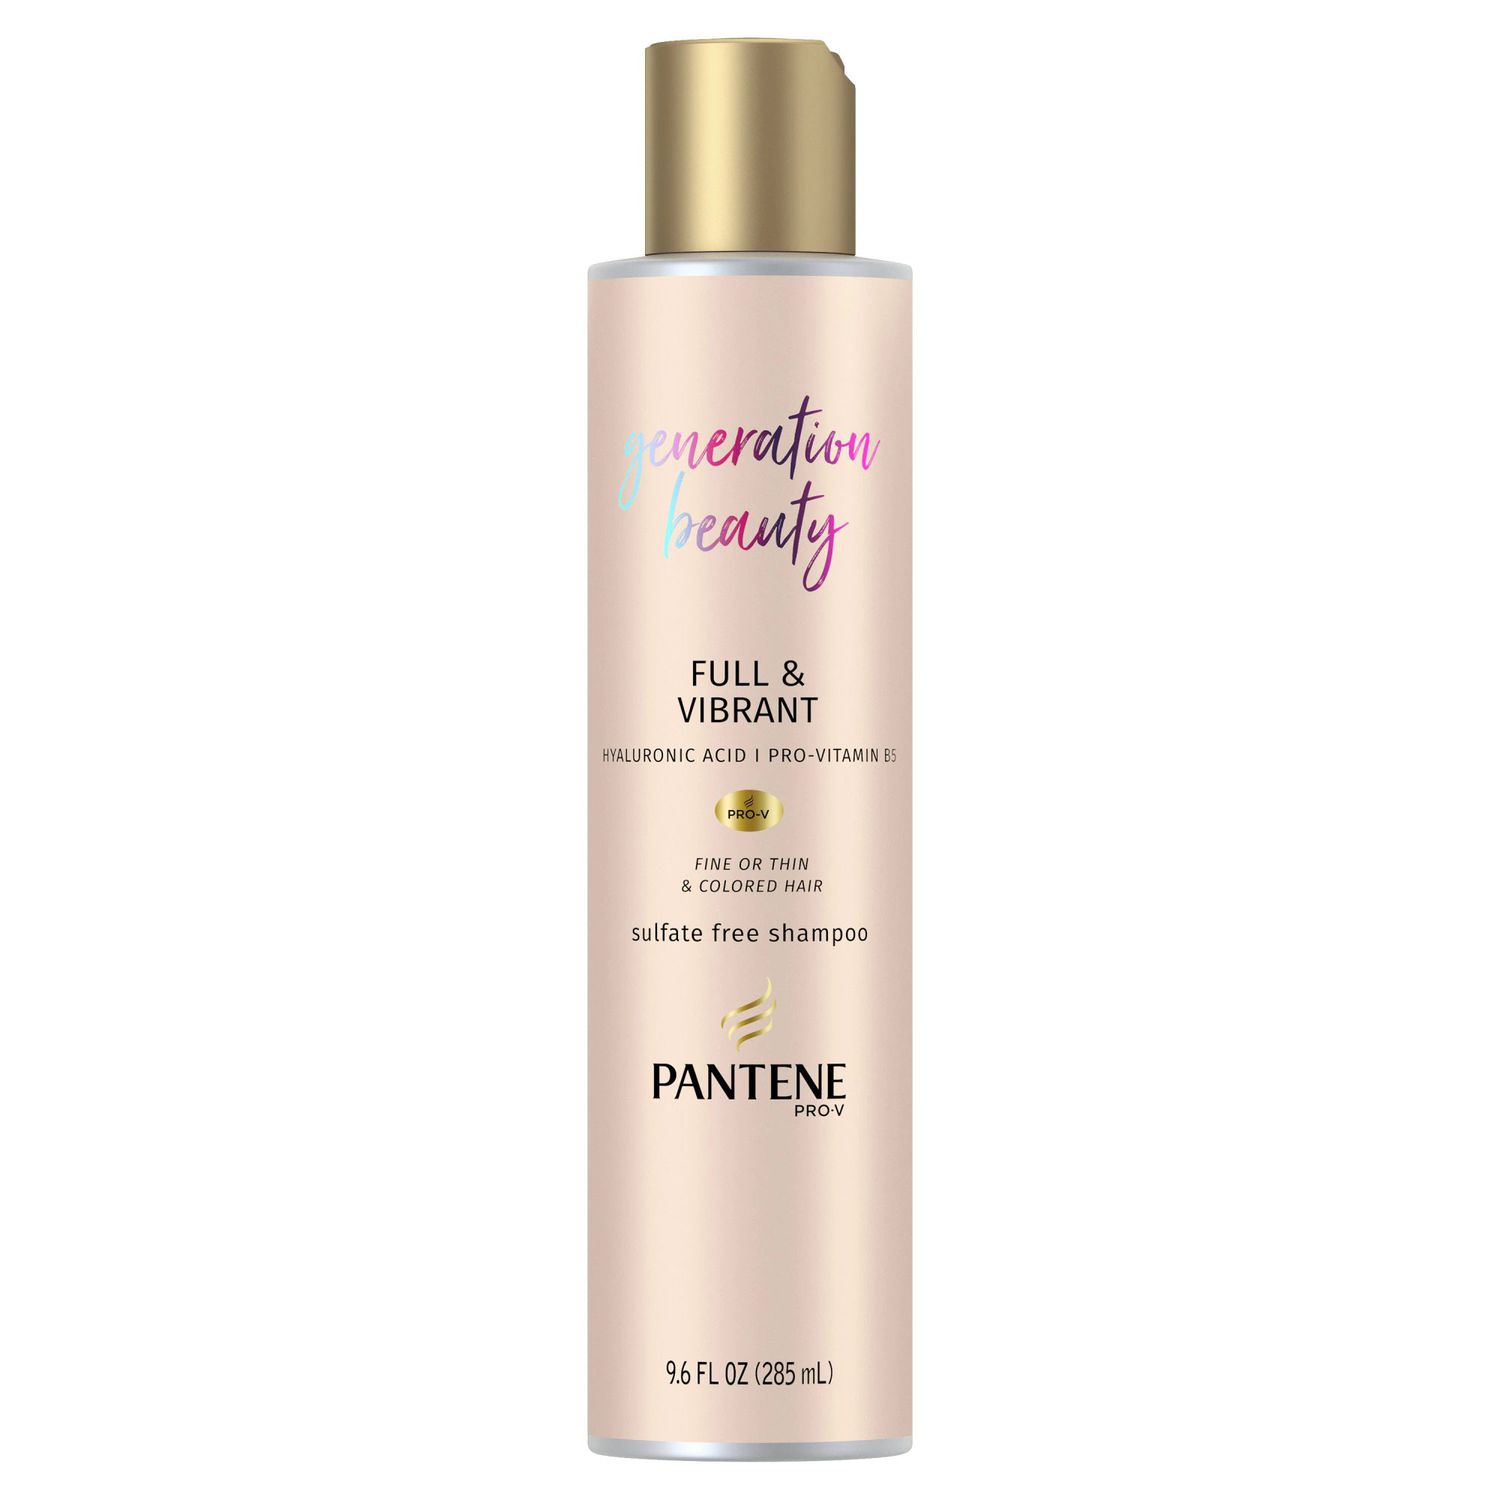 pantene generation beauty shampoo